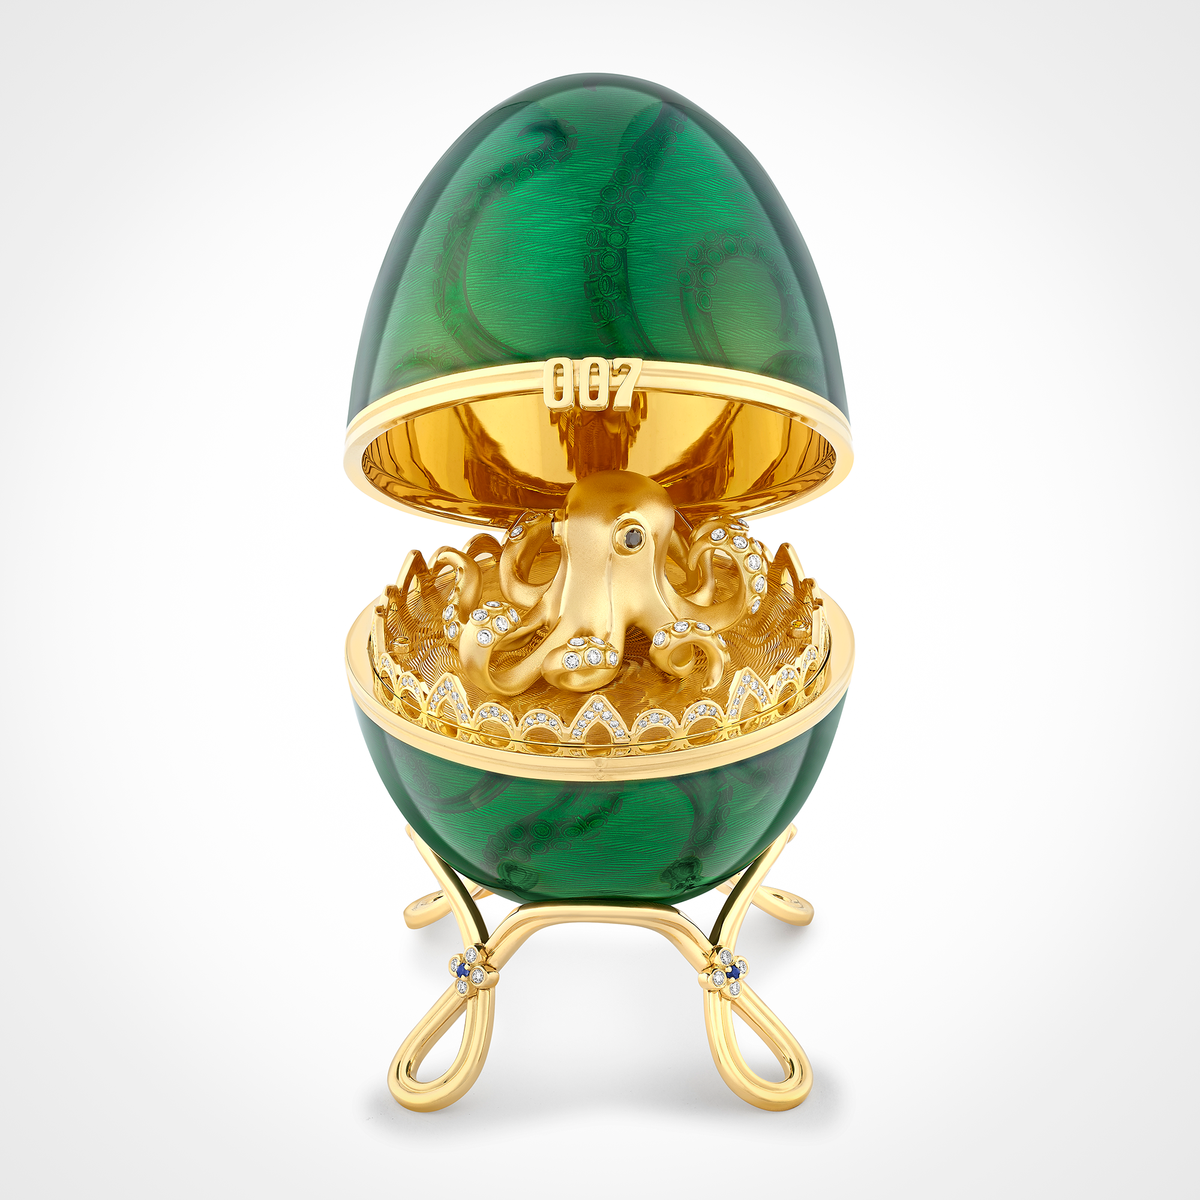 Fabergé x 007 Octopussy Egg Objet - Nummerierte Ausgabe